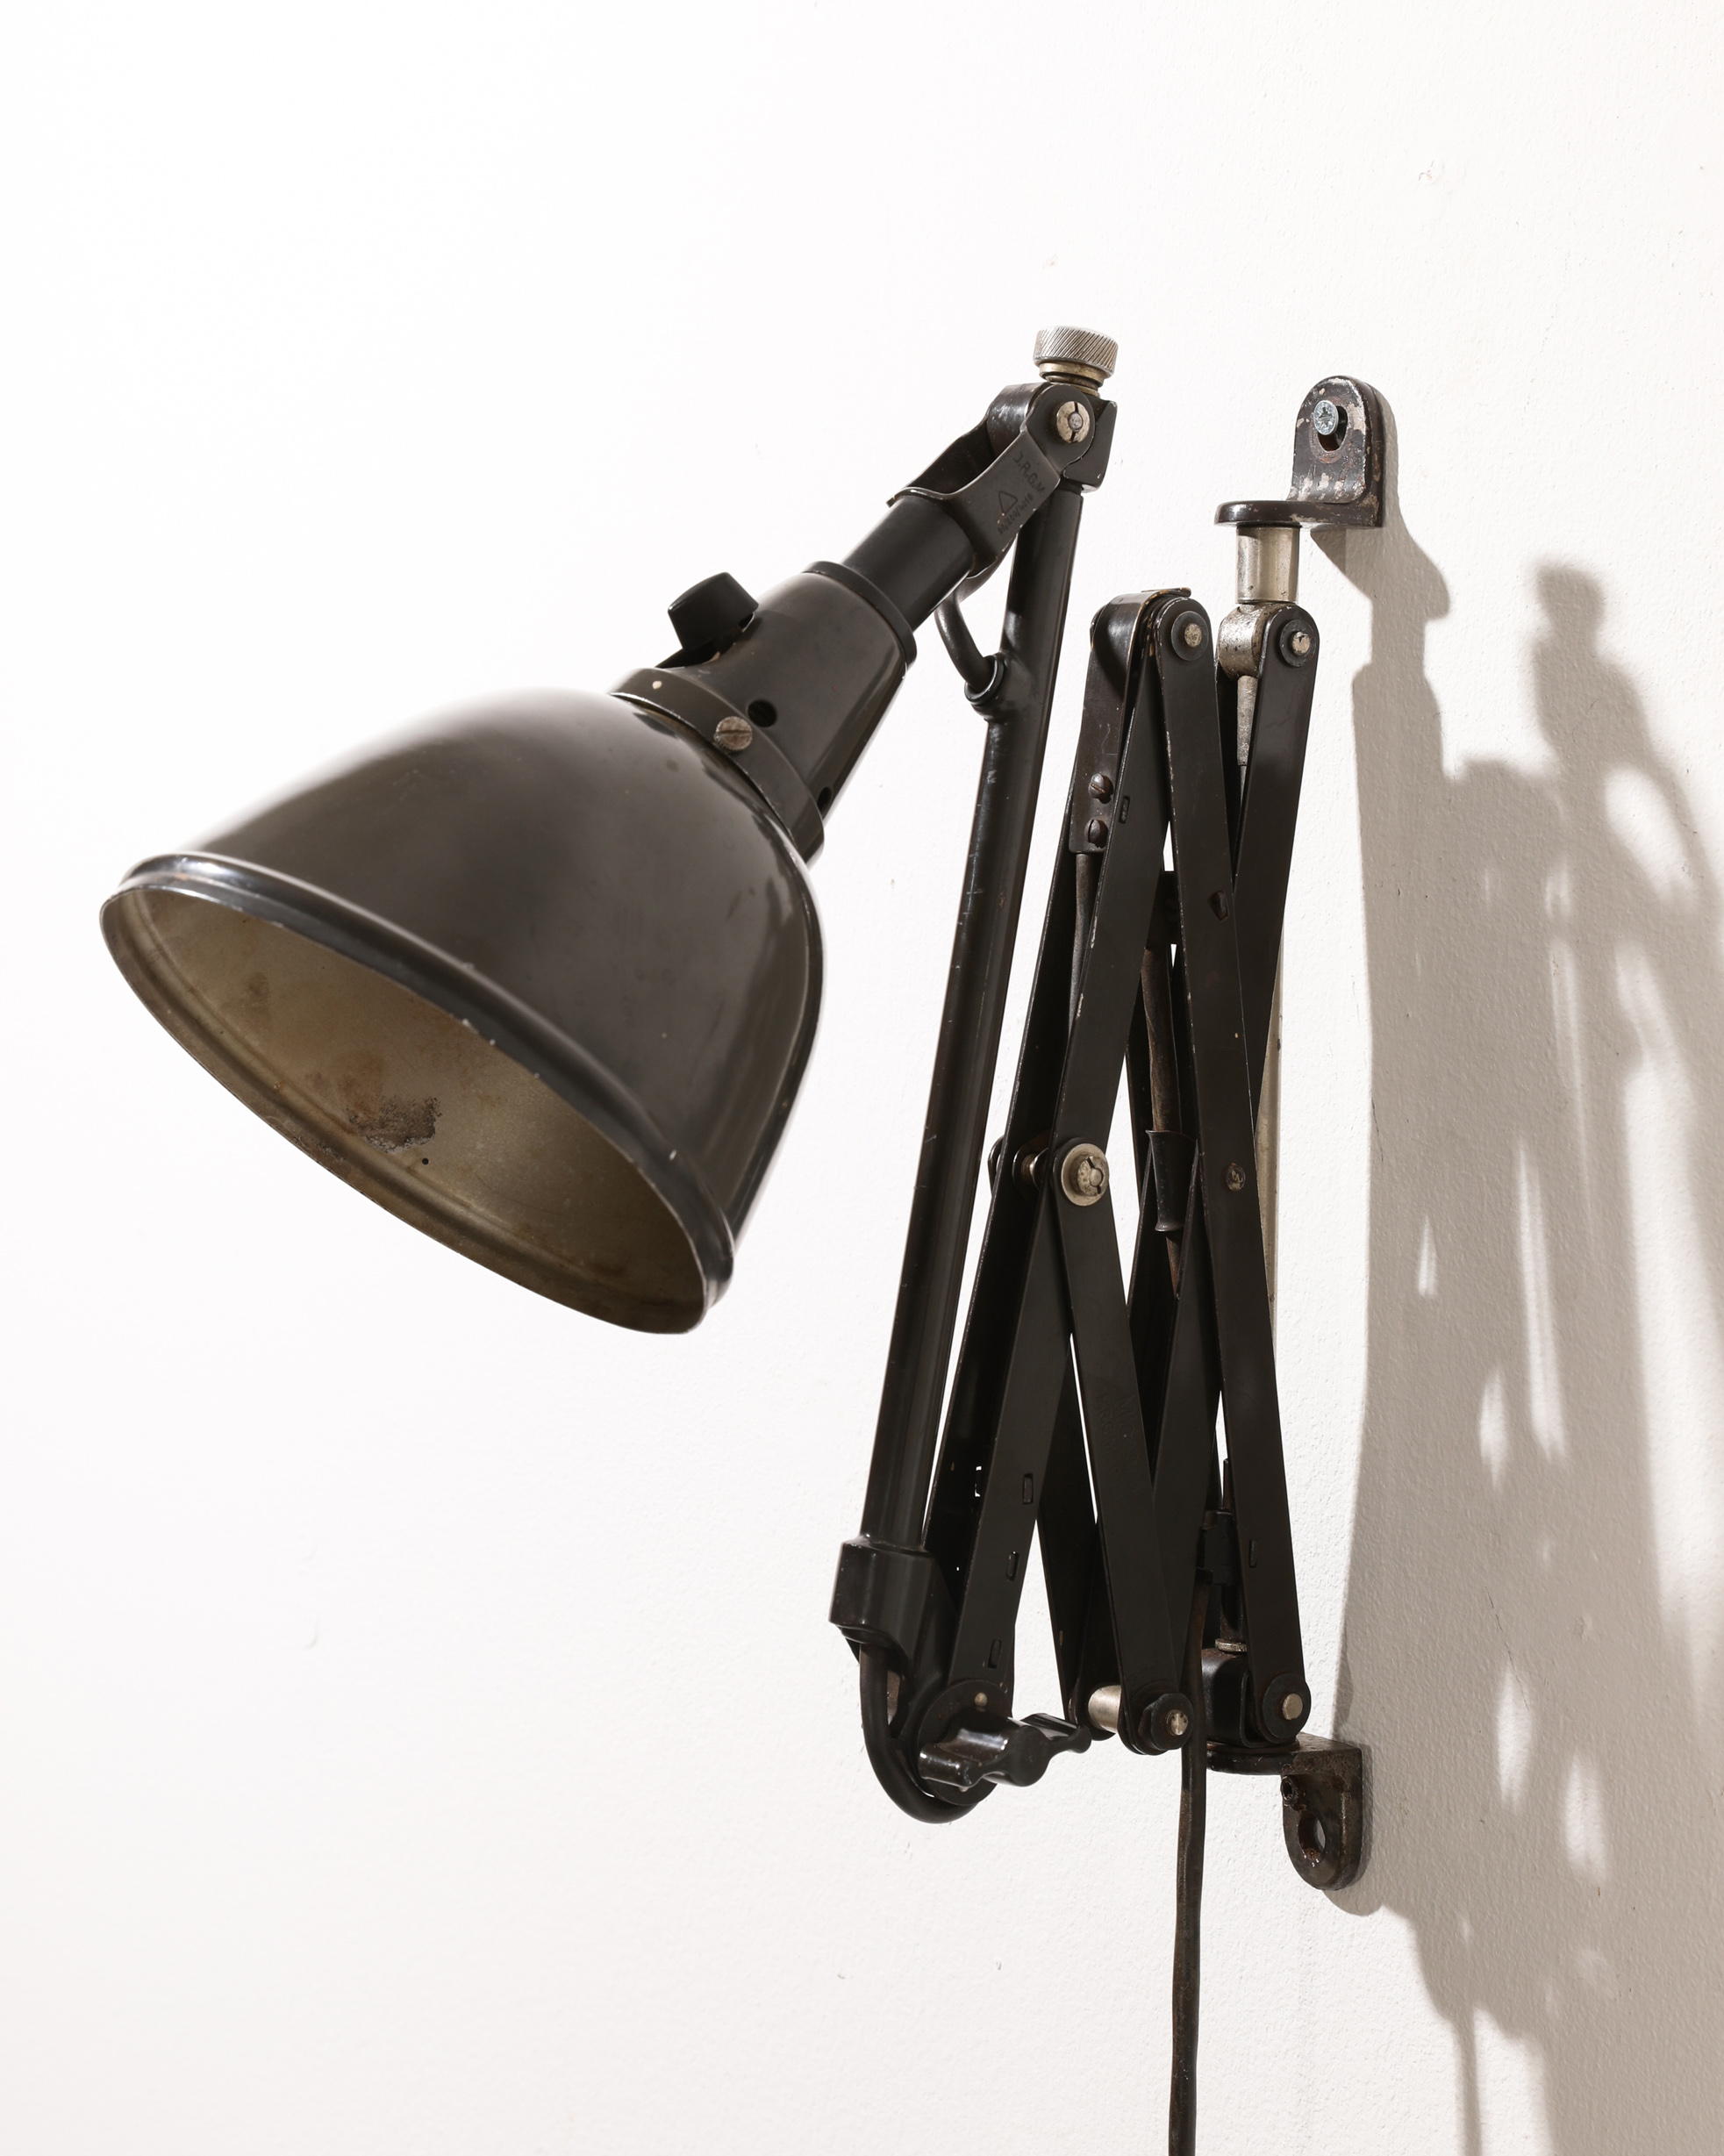 Curt Fischer, Ronneberger & Fischer, Midgard Scissor Wall Lamp - Image 3 of 6